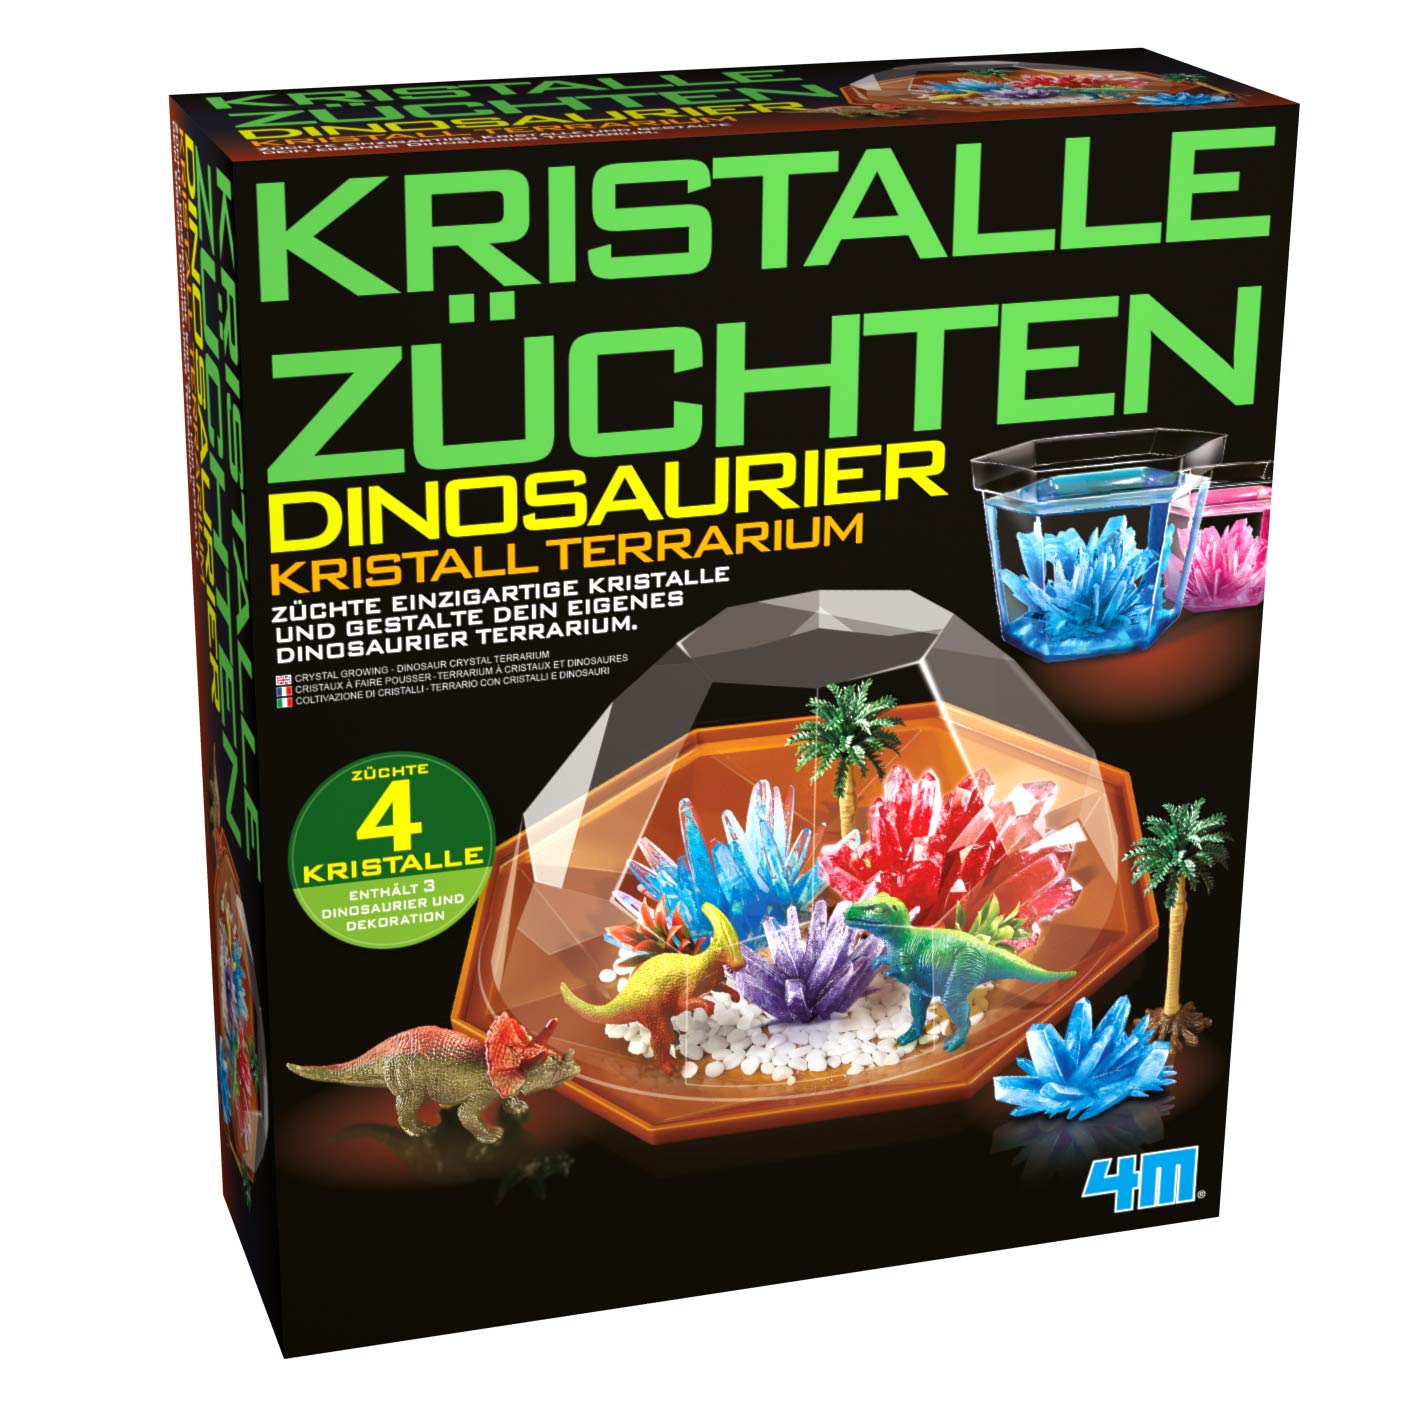 HCM Kinzel 68678 Experimentierkasten Kristalle züchten Dinosaurier Terrarium Kristallzüchtung, Mehrfarbig, 27 x 23,5 x 8cm